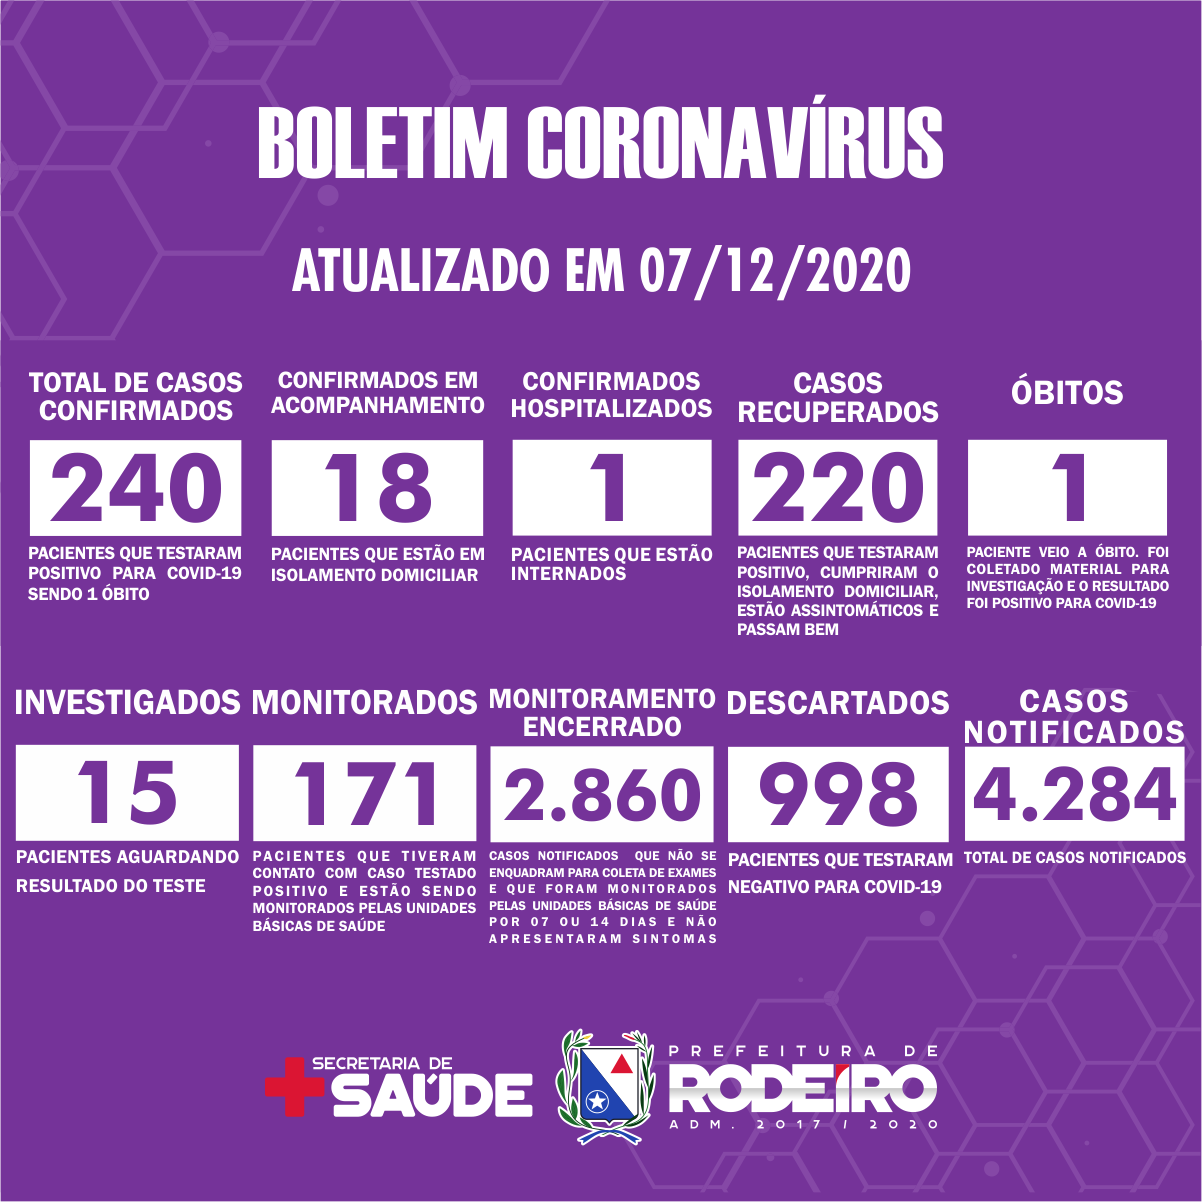 Boletim Epidemiológico do Município de Rodeiro sobre coronavírus, atualizado em 07/12/2020